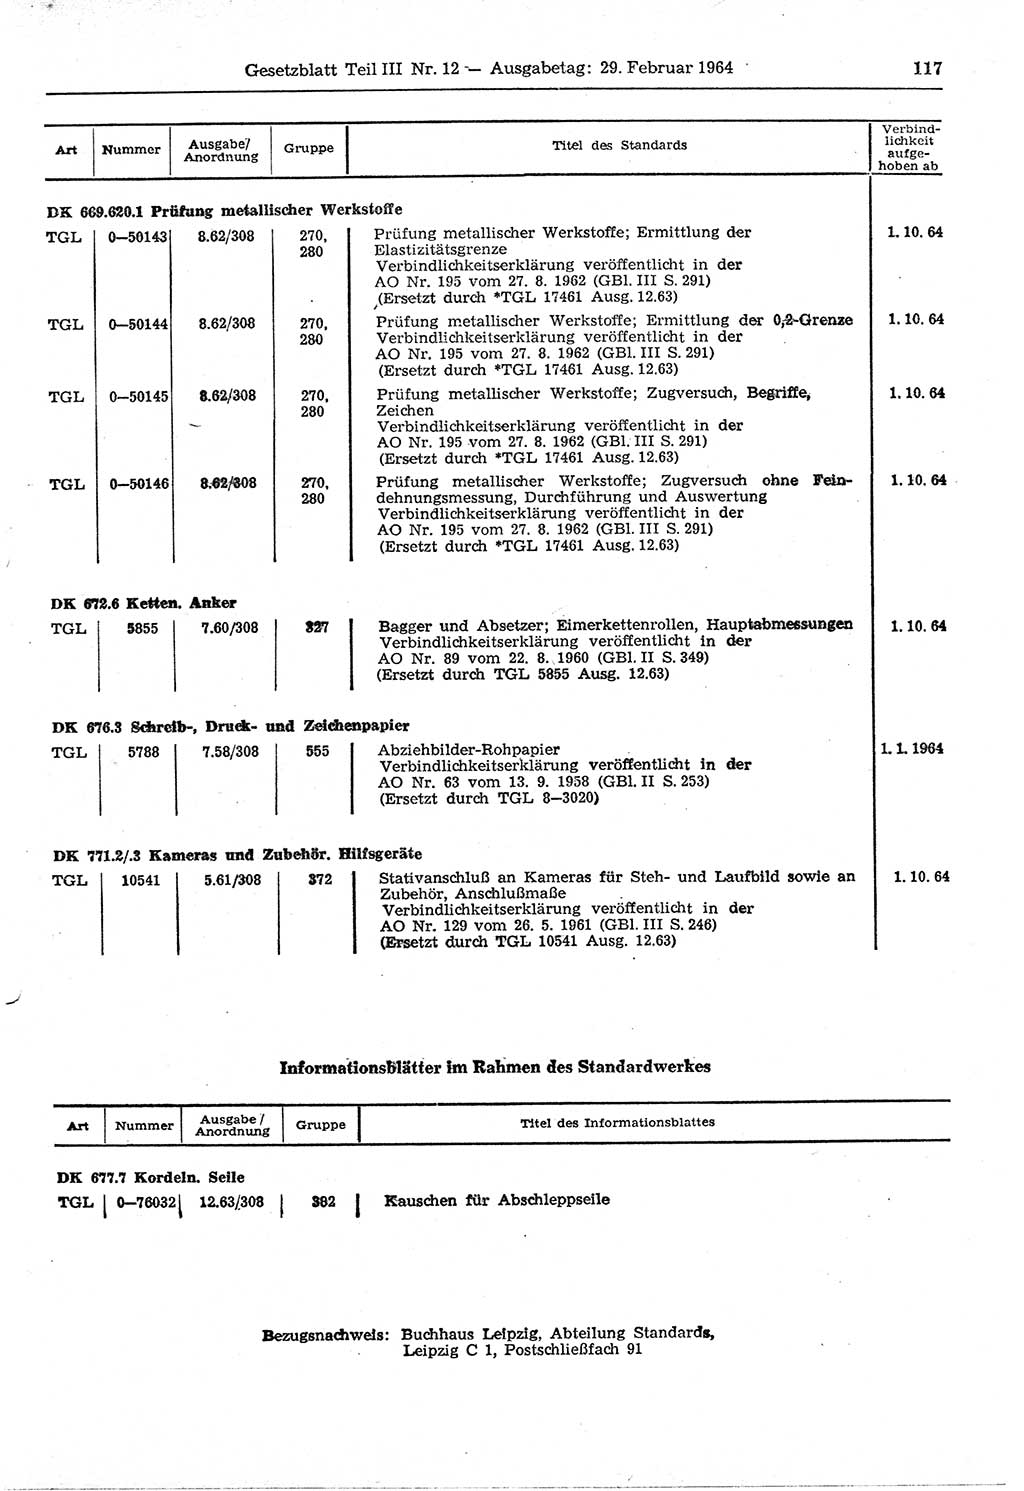 Gesetzblatt (GBl.) der Deutschen Demokratischen Republik (DDR) Teil ⅠⅠⅠ 1964, Seite 117 (GBl. DDR ⅠⅠⅠ 1964, S. 117)